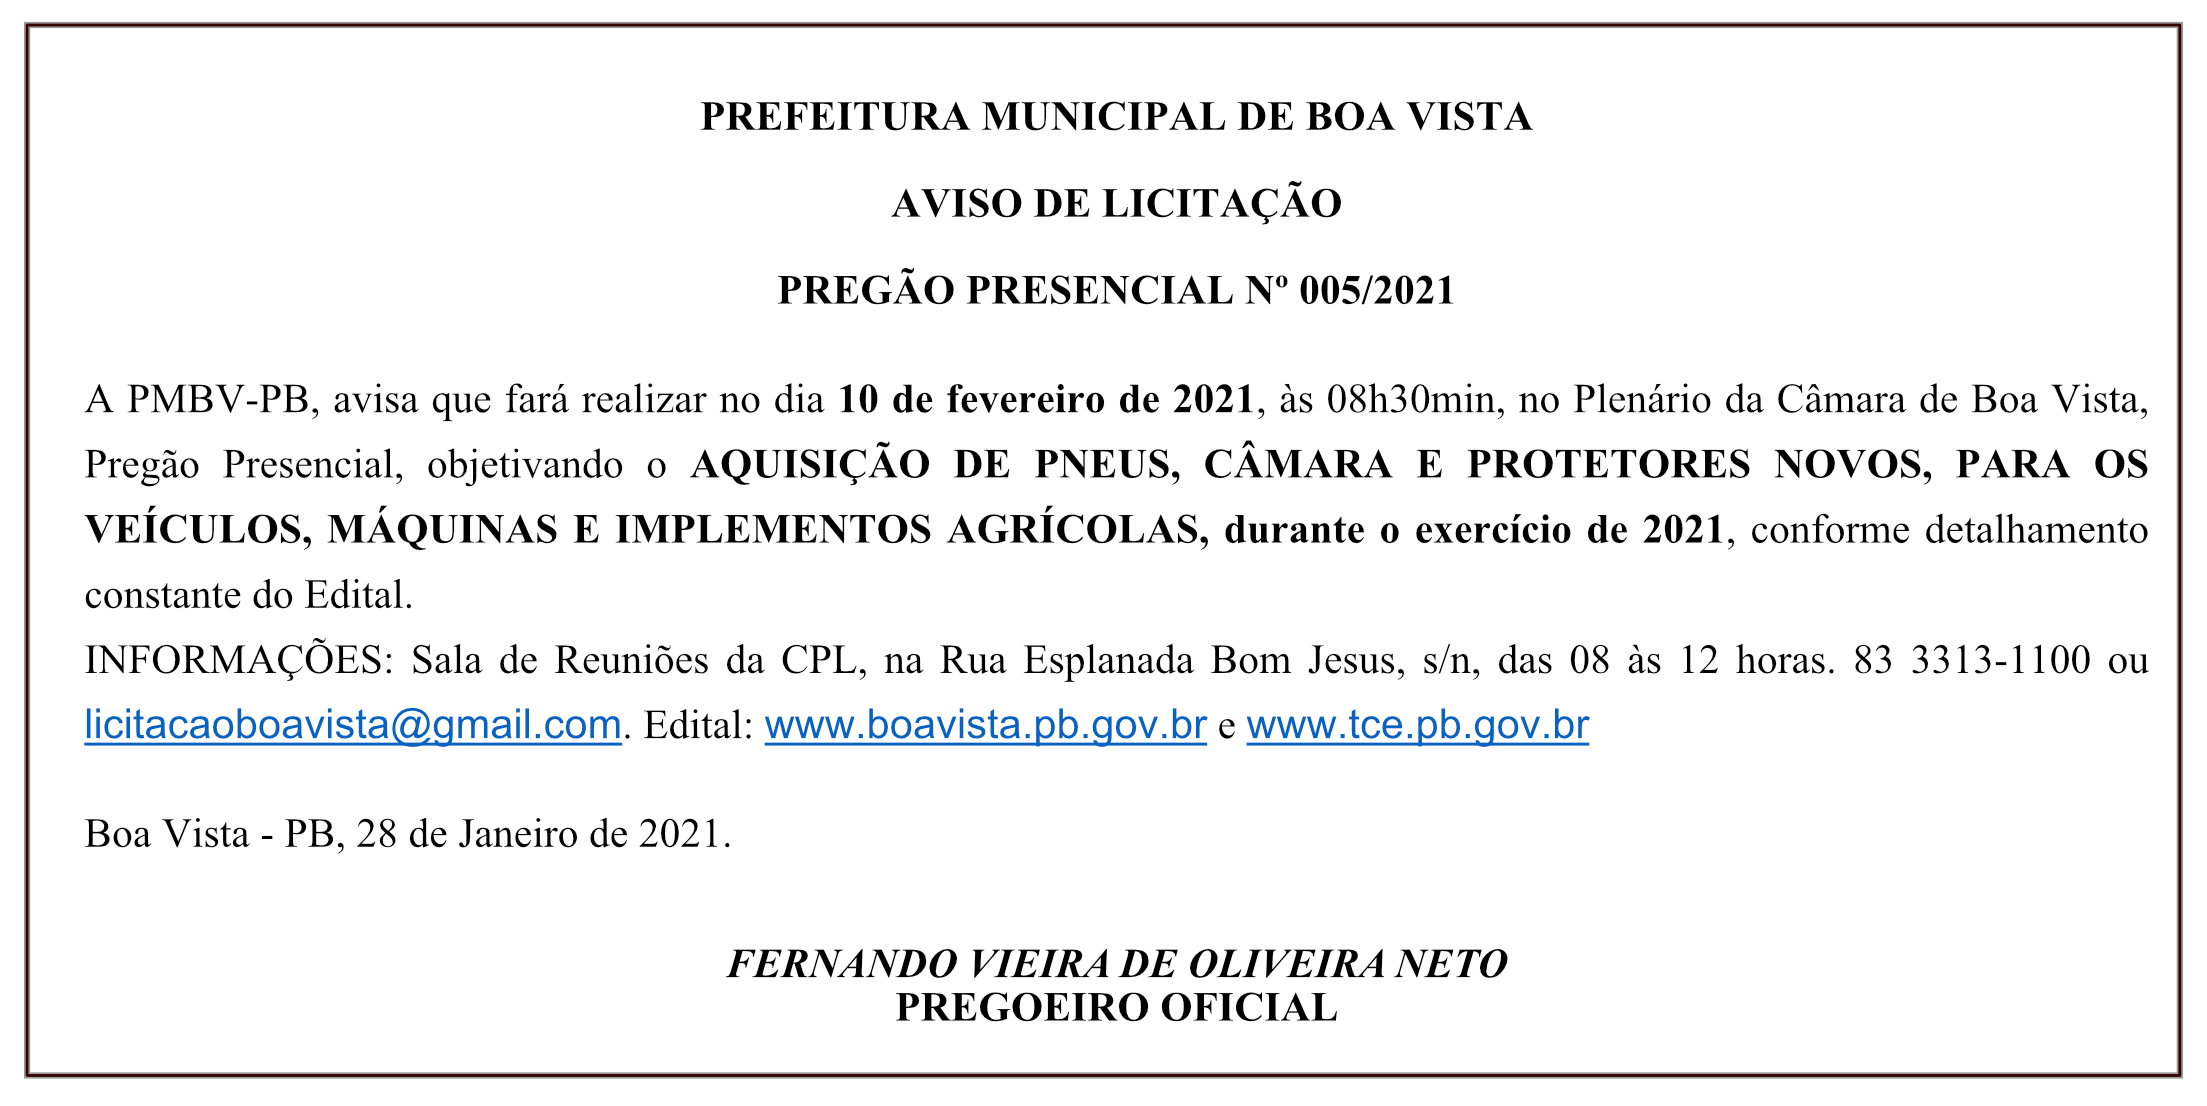 PREFEITURA MUNICIPAL DE BOA VISTA – AVISO DE LICITAÇÃO – PREGÃO PRESENCIAL Nº 005/2021